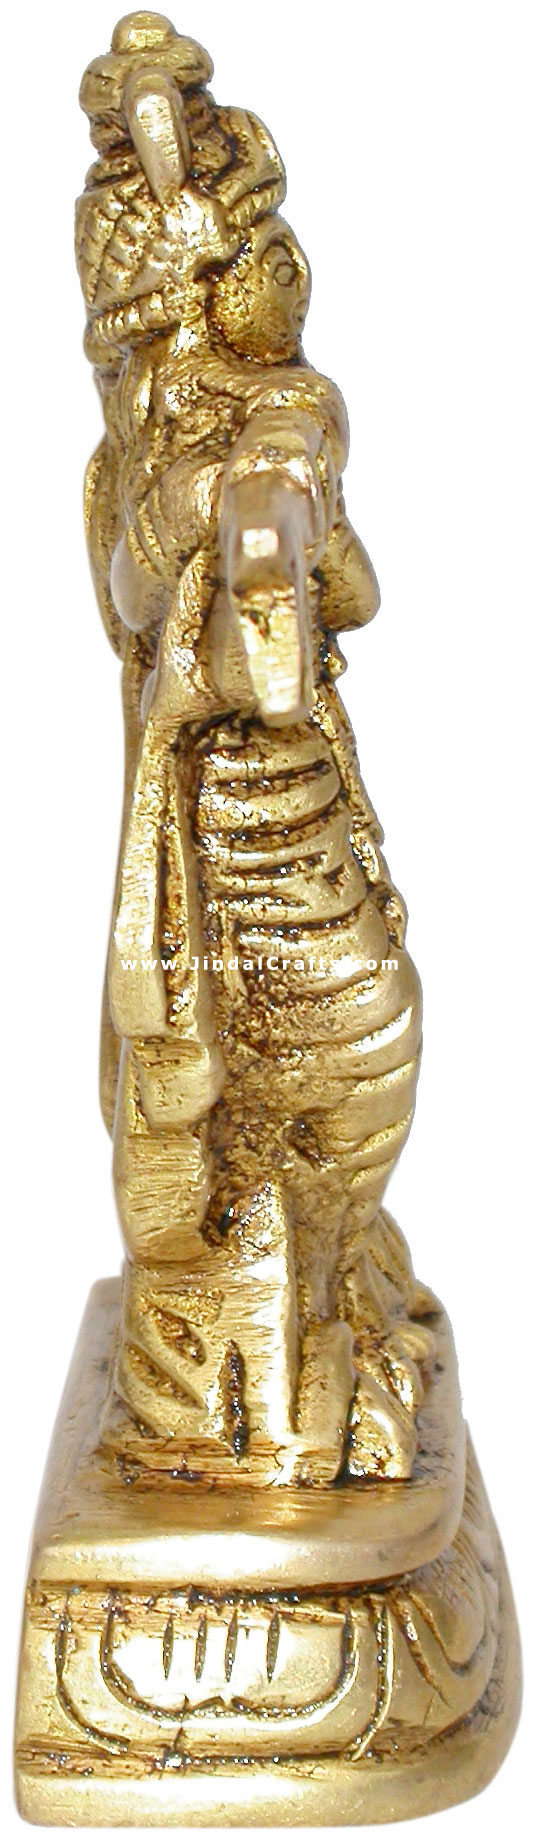 Radha Krishna - Hindu Religious Statue Brass Handicraft